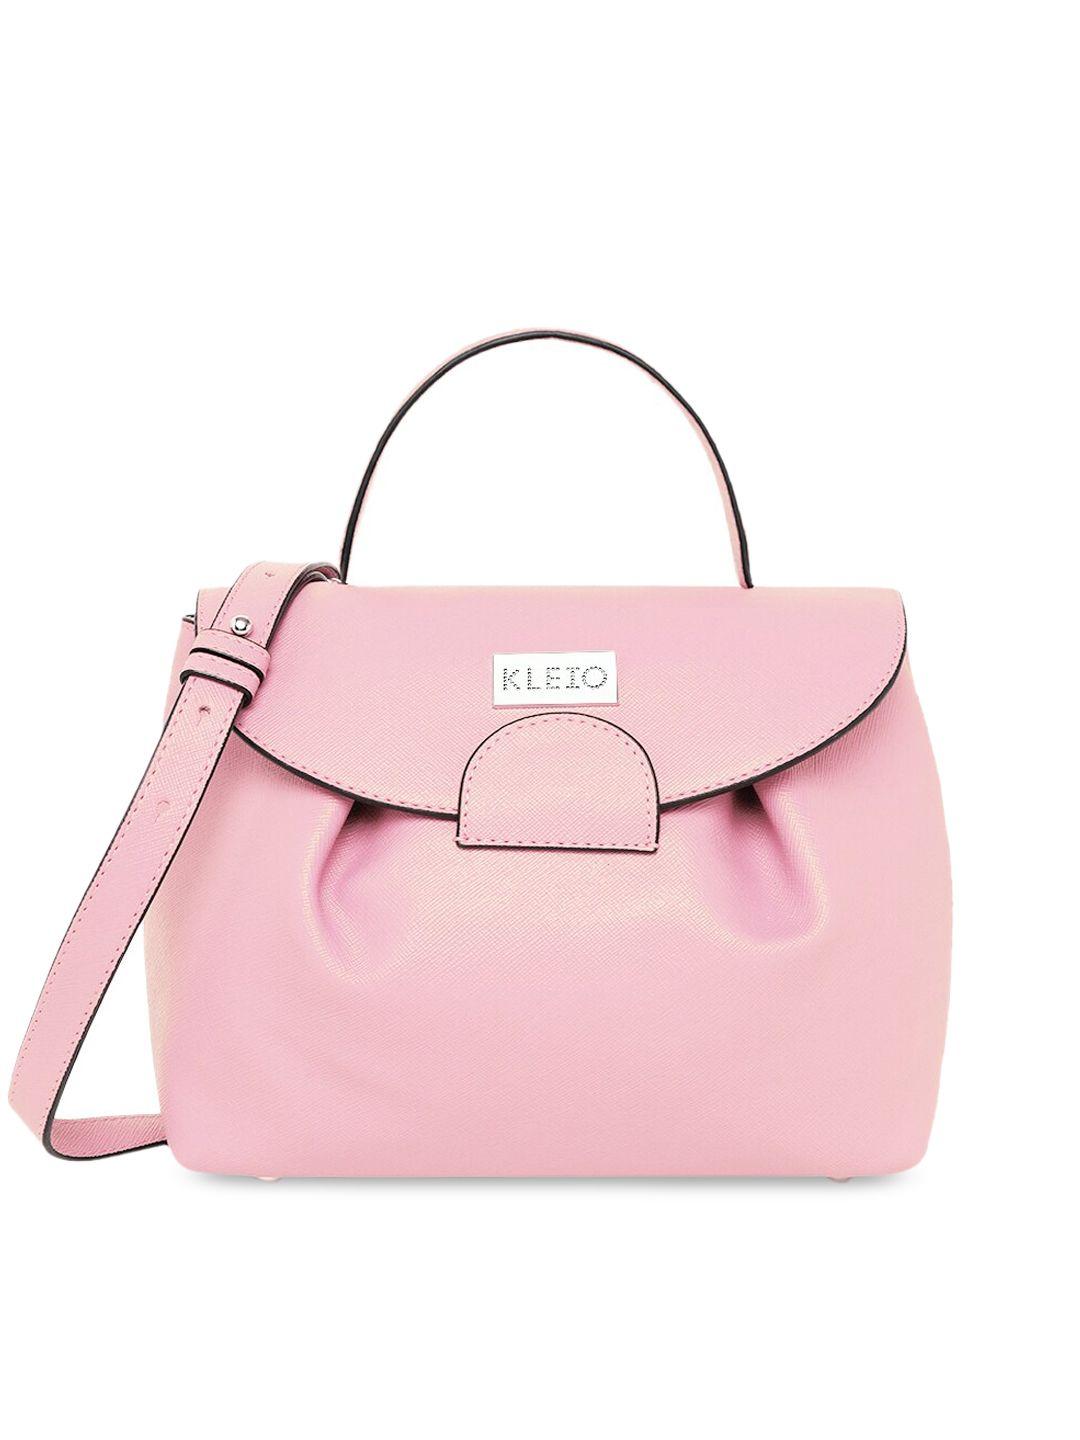 kleio pink structured satchel